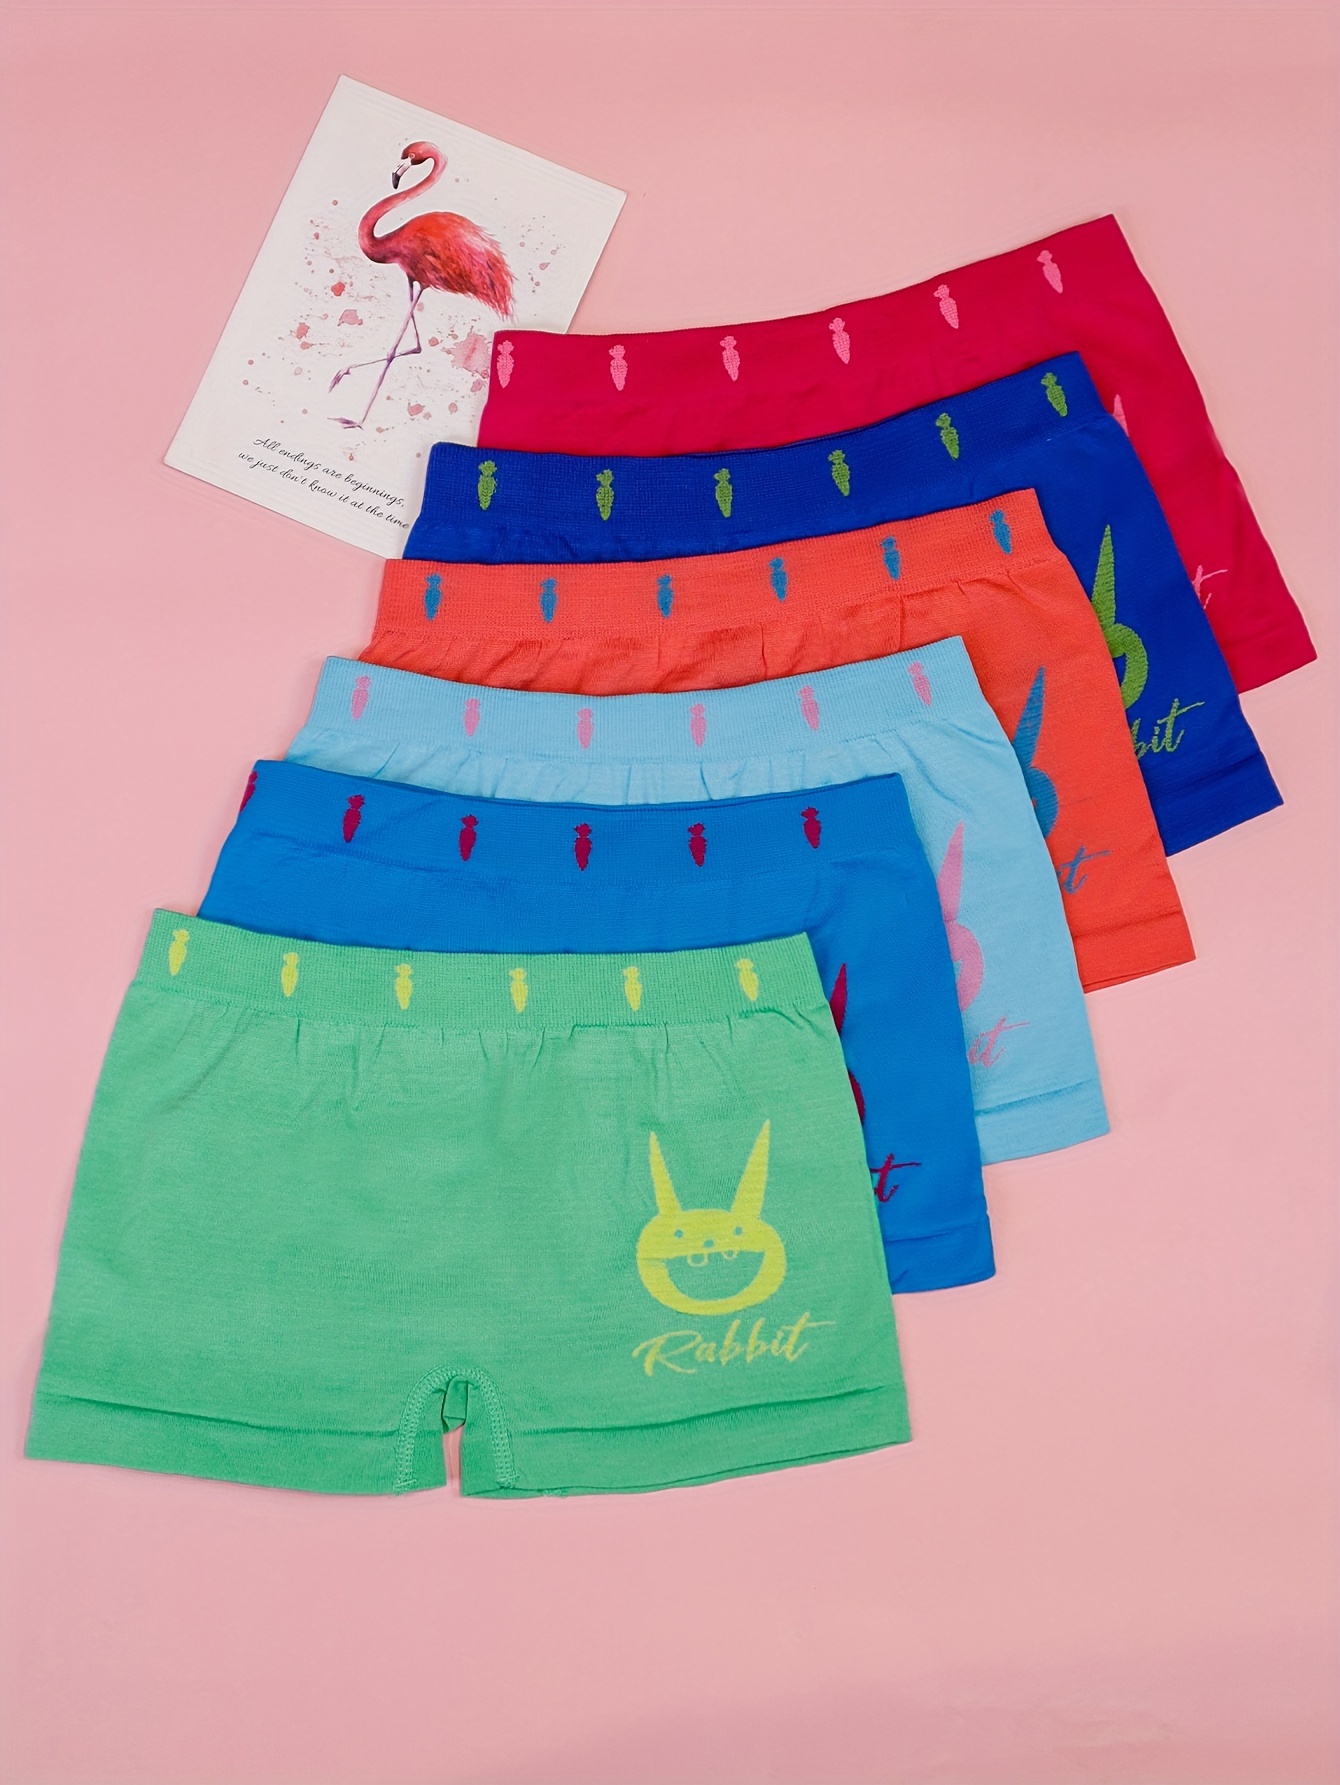 1pc Strawberry Girls Baby Cotton Underwear Boxer Brief Panties